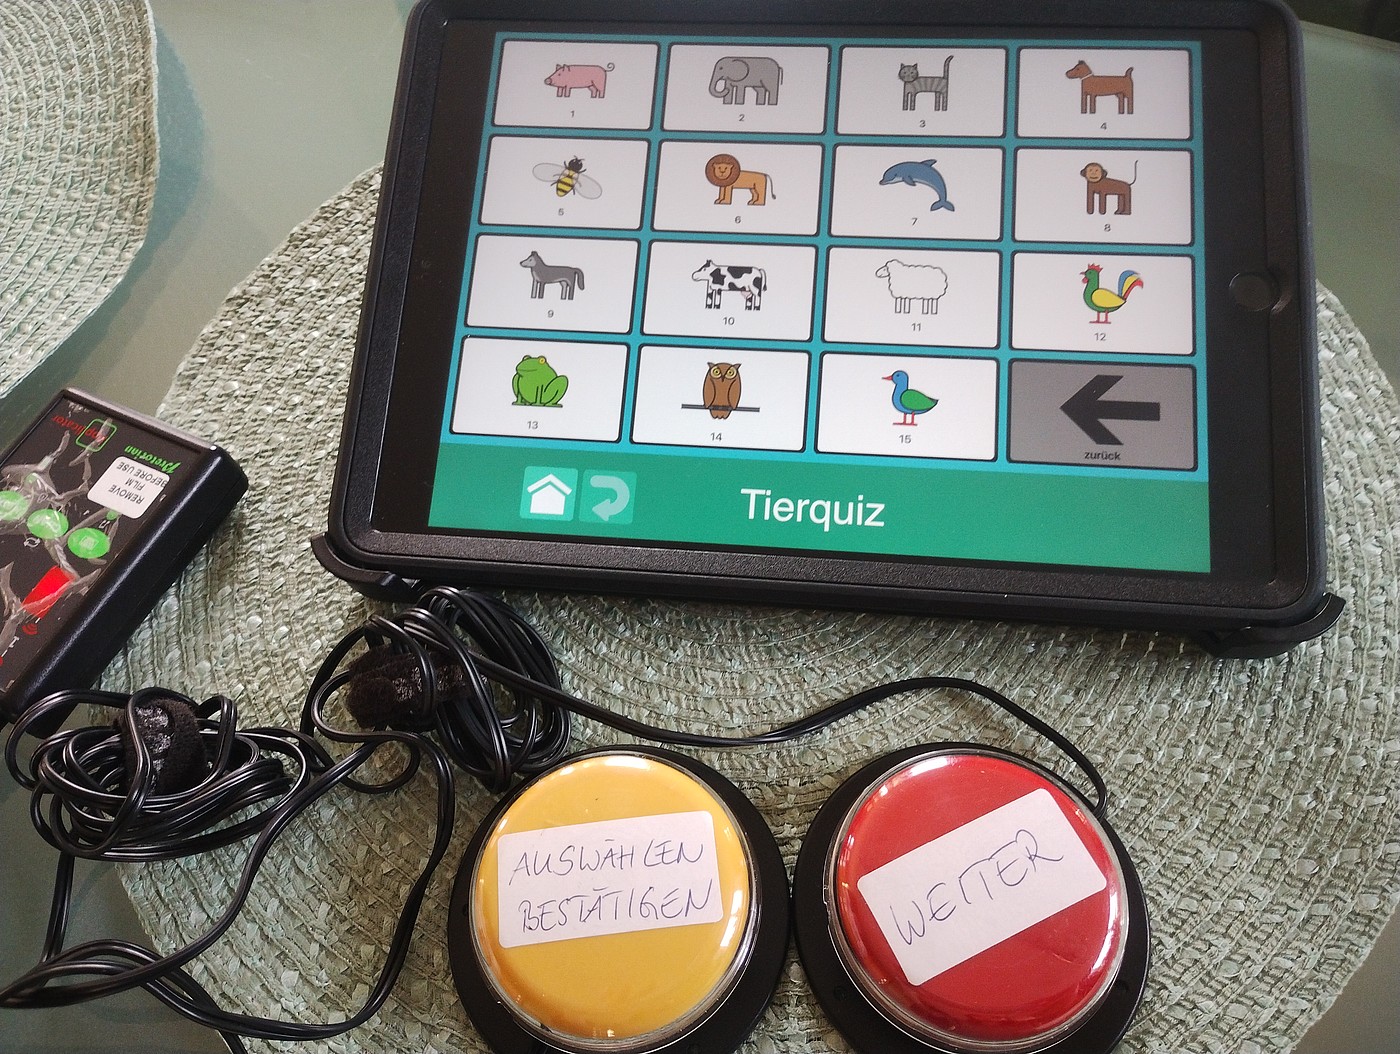 Tablette et buzzer comme exemple d'un moyen auxiliaire de communication améliorée et alternative